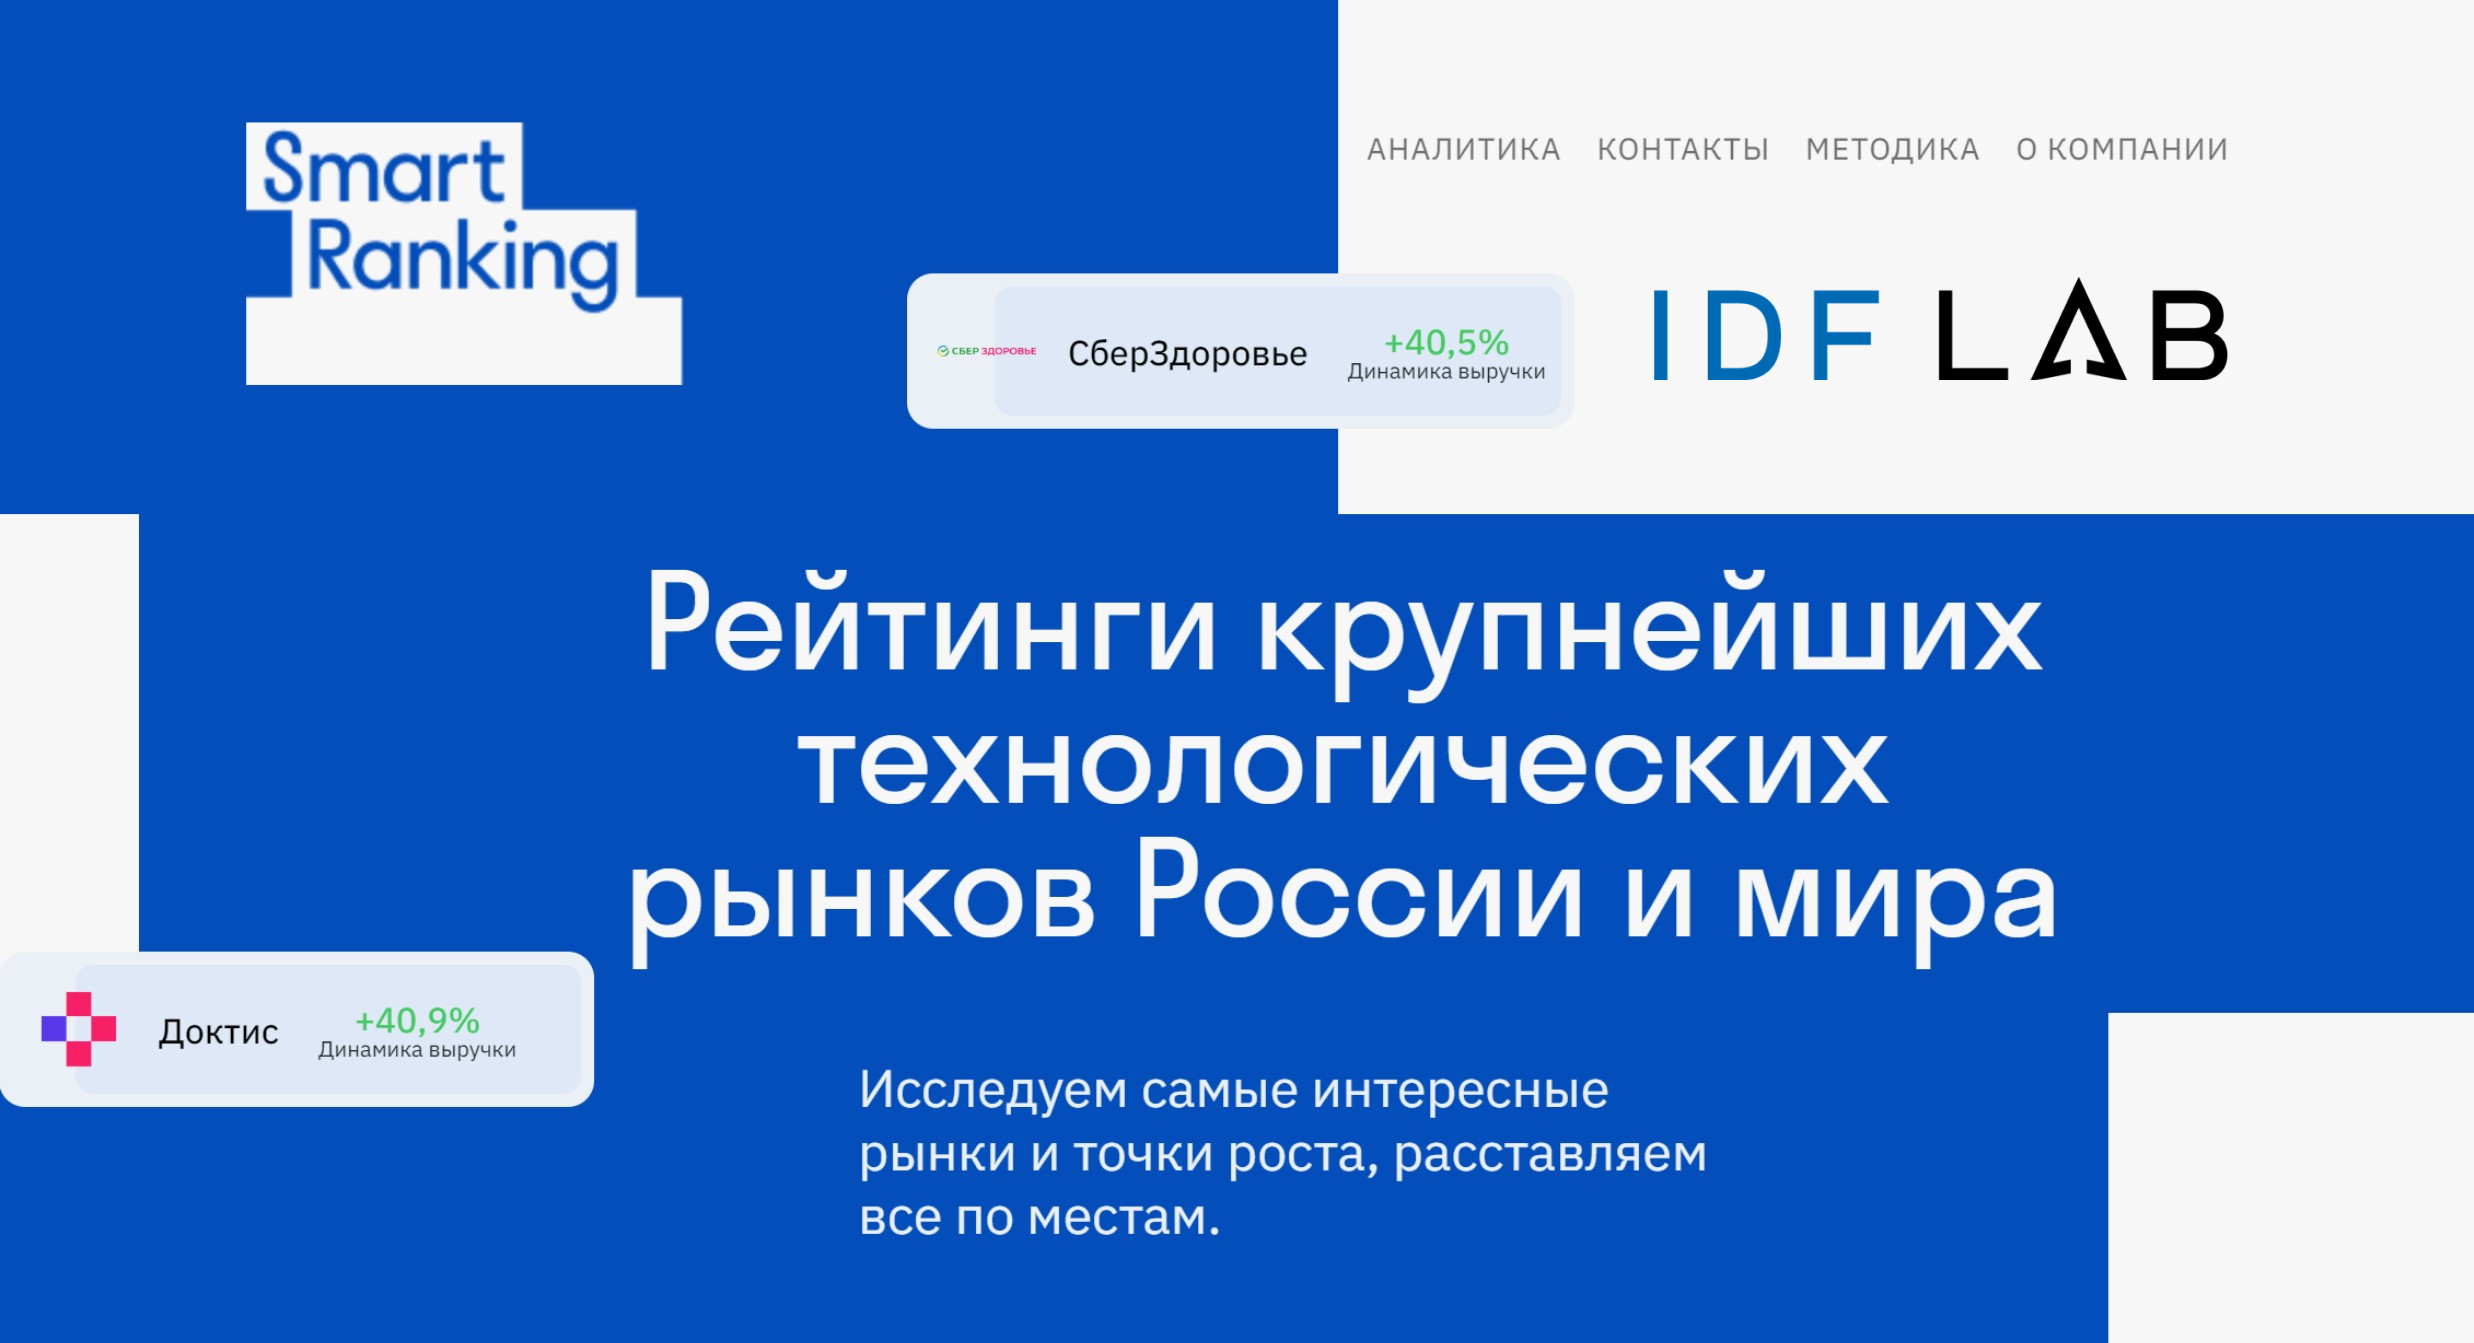 IDF Lab вошла в Топ крупнейших финтех-компаний РФ по версии Smart Ranking